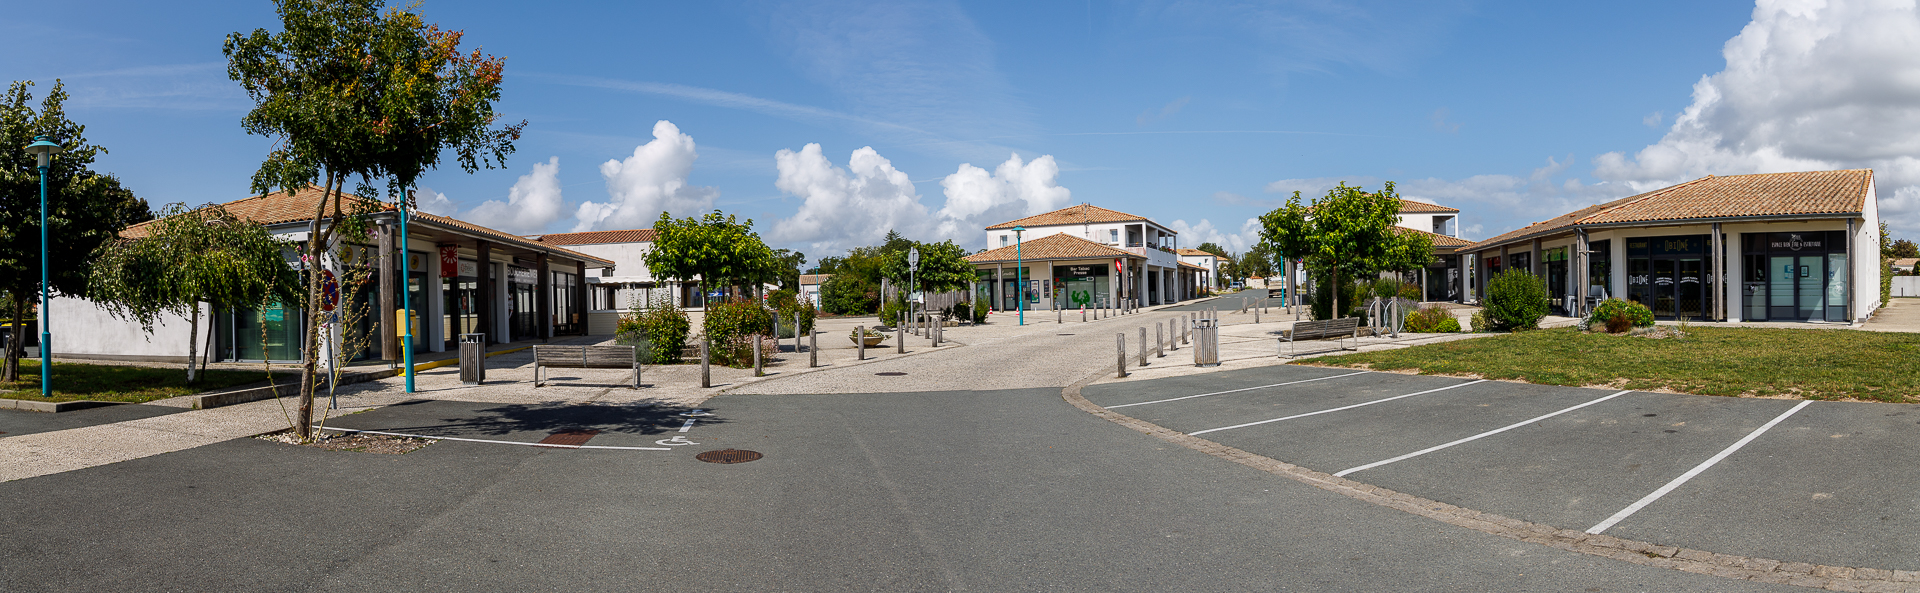 Avenue de l'Ile d'Oléron - Marsilly